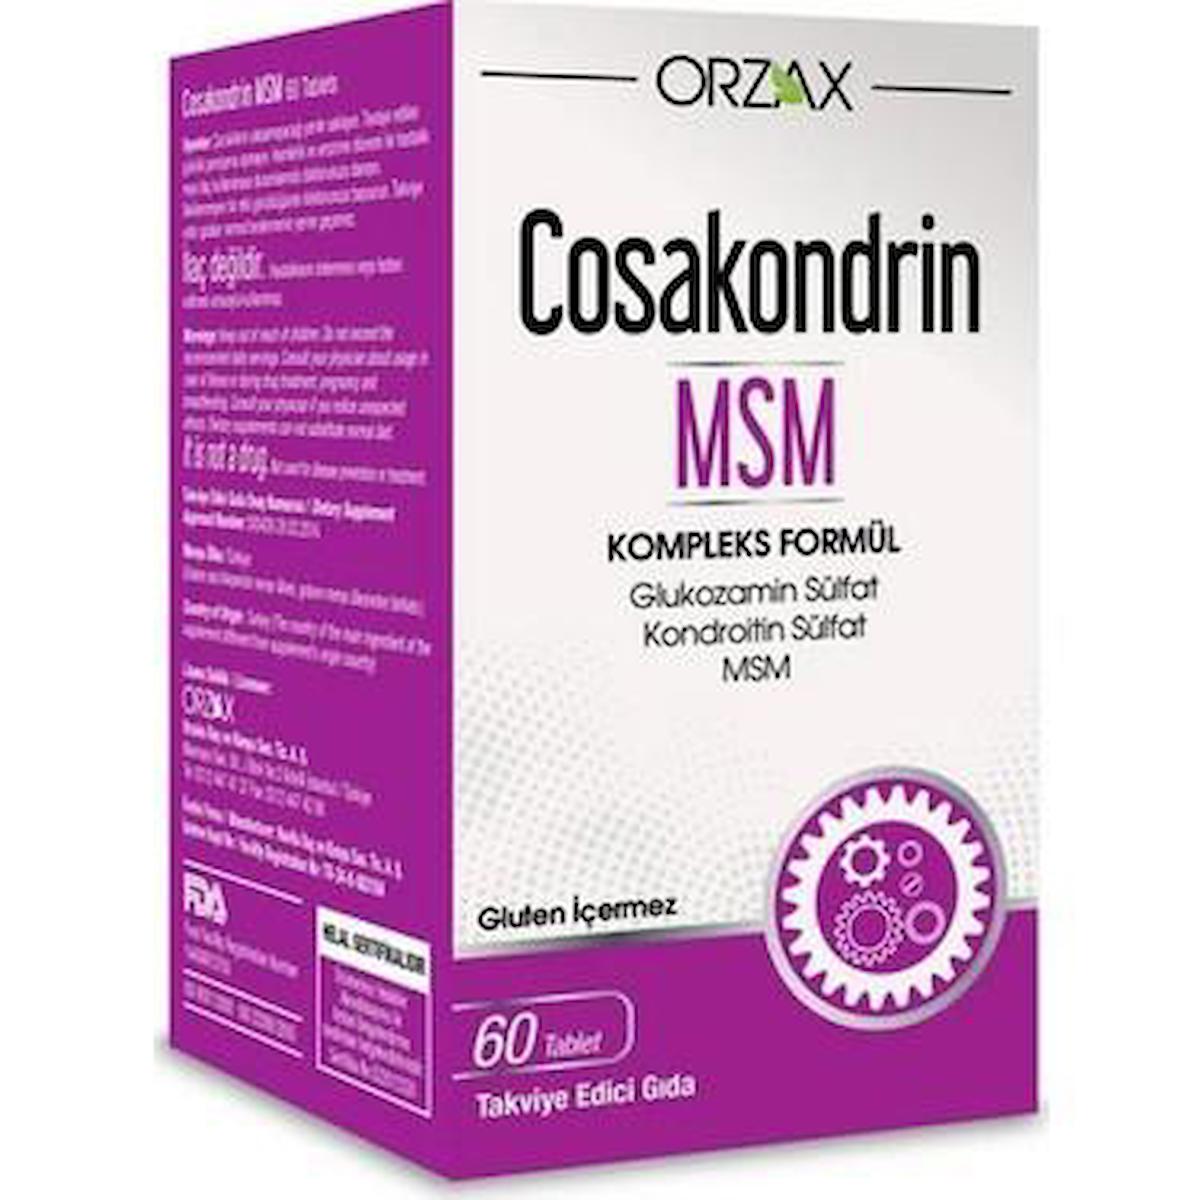 Ocean Cosakondrin Msm Glukozamin 60 Tablet